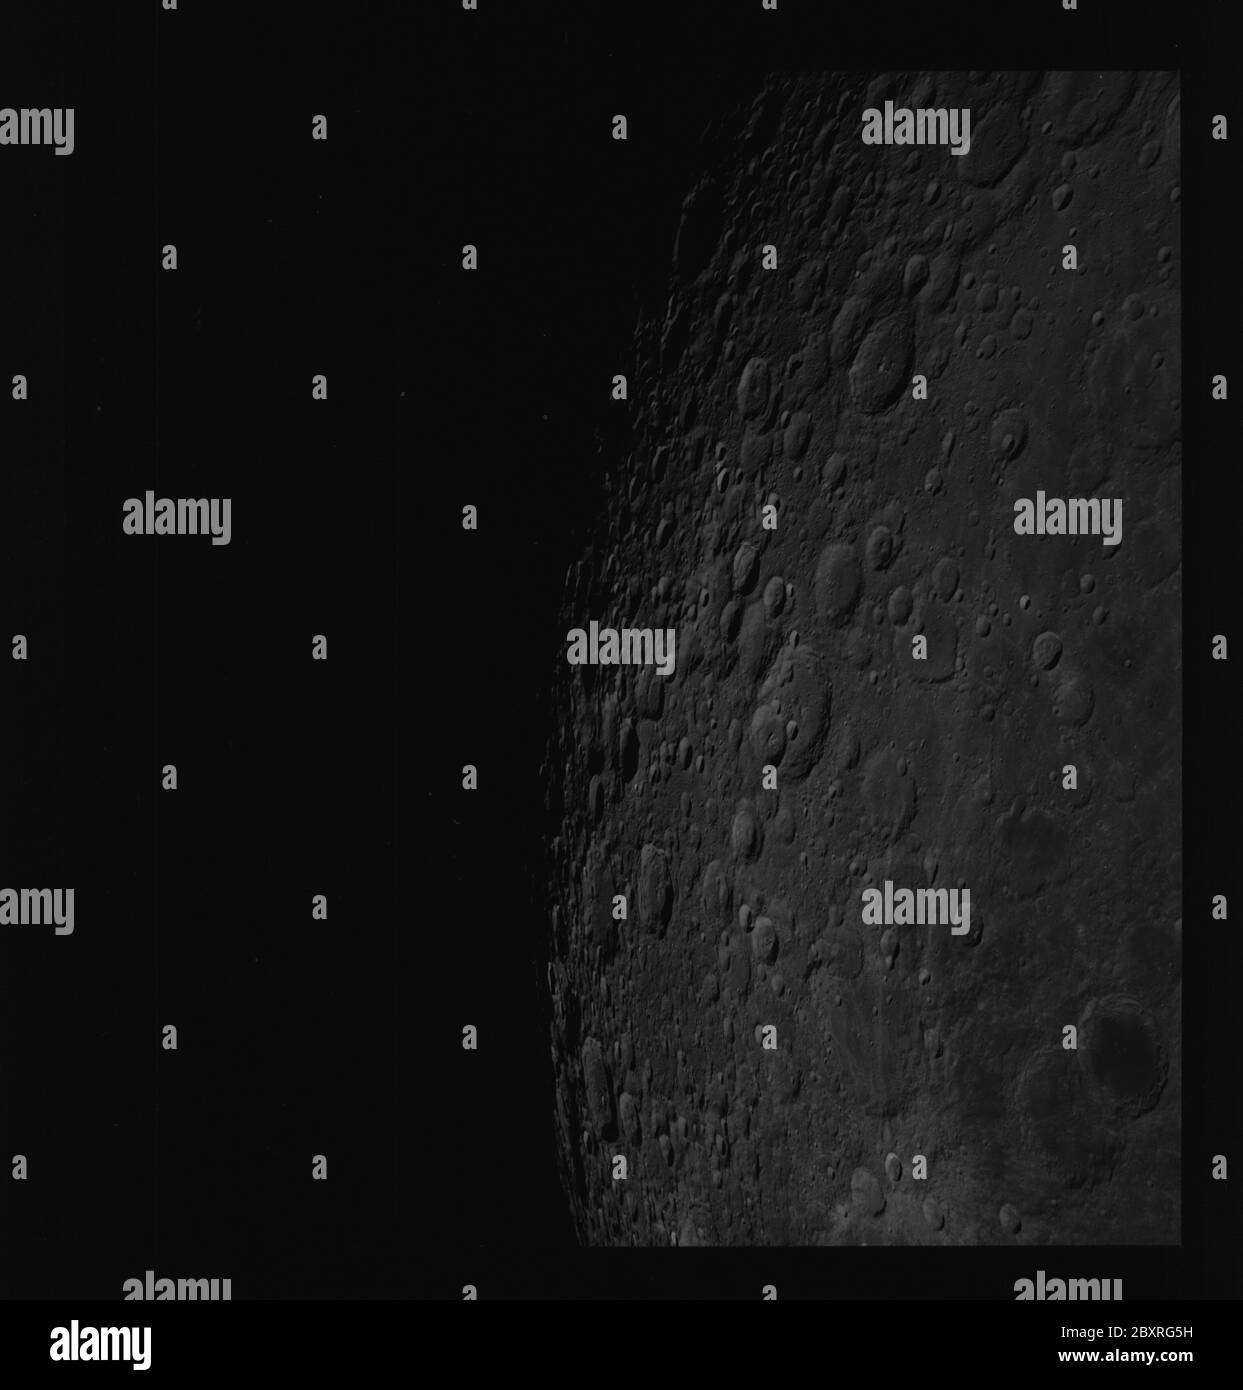 AS14-71-9882 - Apollo 14 - immagine della missione Apollo 14 - Vista dei crateri Maxwell, Szilard, Seyfert e Olcott.; ambito e contenuto: Il database originale descrive questo come: Descrizione: Vista dei crateri Maxwell, Szilard, Seyfert e Olcott. Le immagini sono state scattate durante la Transearchh Coast (TEC) della missione Apollo 14. Il caricatore di pellicola originale era etichettato T, il tipo di pellicola era 3400BW (Panatomic-X, Nero e Bianco), lente da 80 mm con un'elevazione del sole di 20 gradi. Vista dell'orizzonte, con un azimut di 45 gradi. Oggetto: Apollo 14 volo, Luna (pianeta) Categorie: Osservazioni lunari originale: Film - 7 Foto Stock